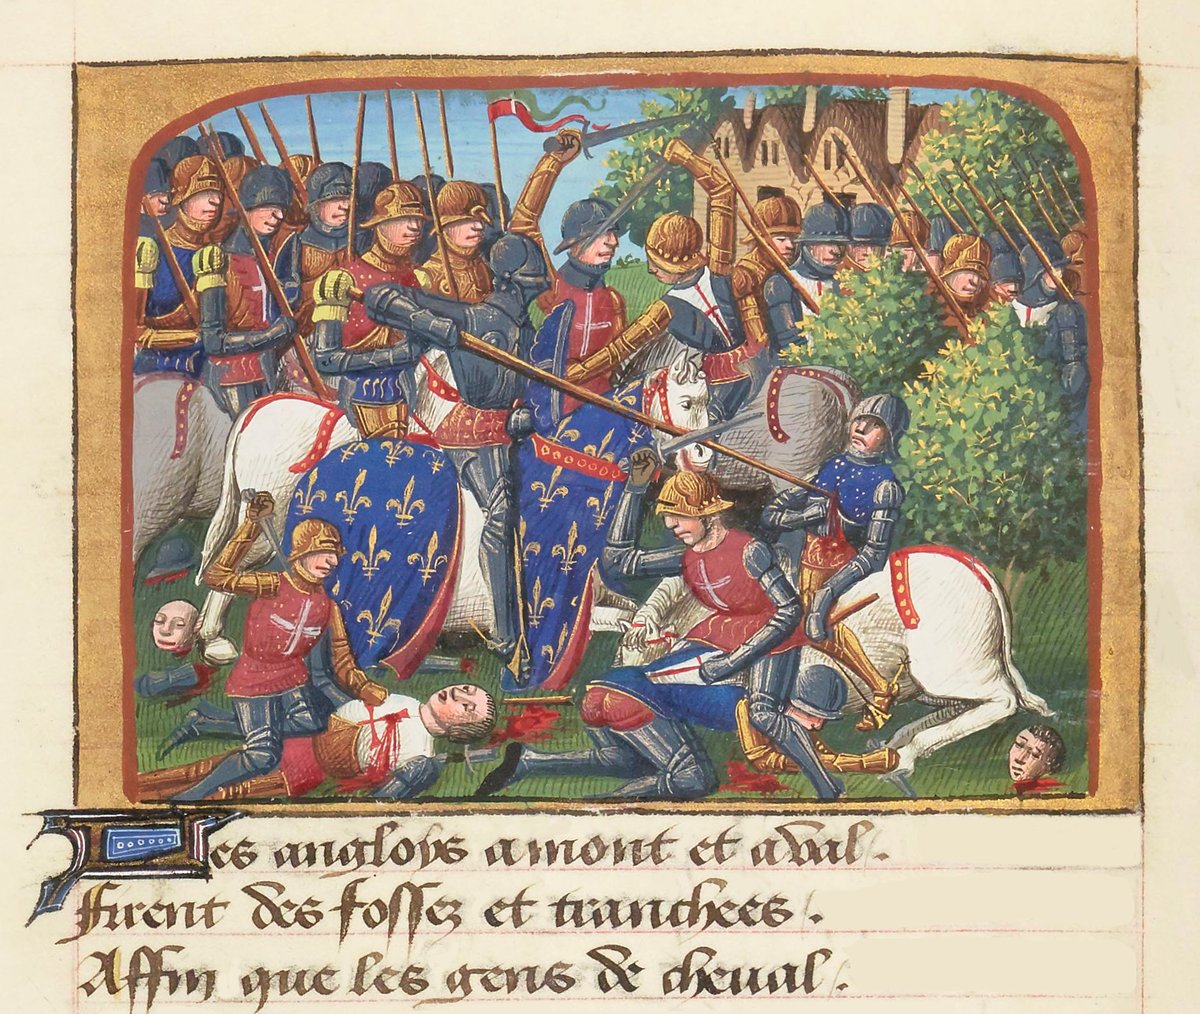 #Efemérides: El 15 de abril de 1450 fue la batalla de #Formigny enmarcada en el contexto de la #GuerraDeLosCienAños sucedió en Formigny, cerca de #Carentan, #Francia. Acabó resultando en una victoria decisiva francesa.